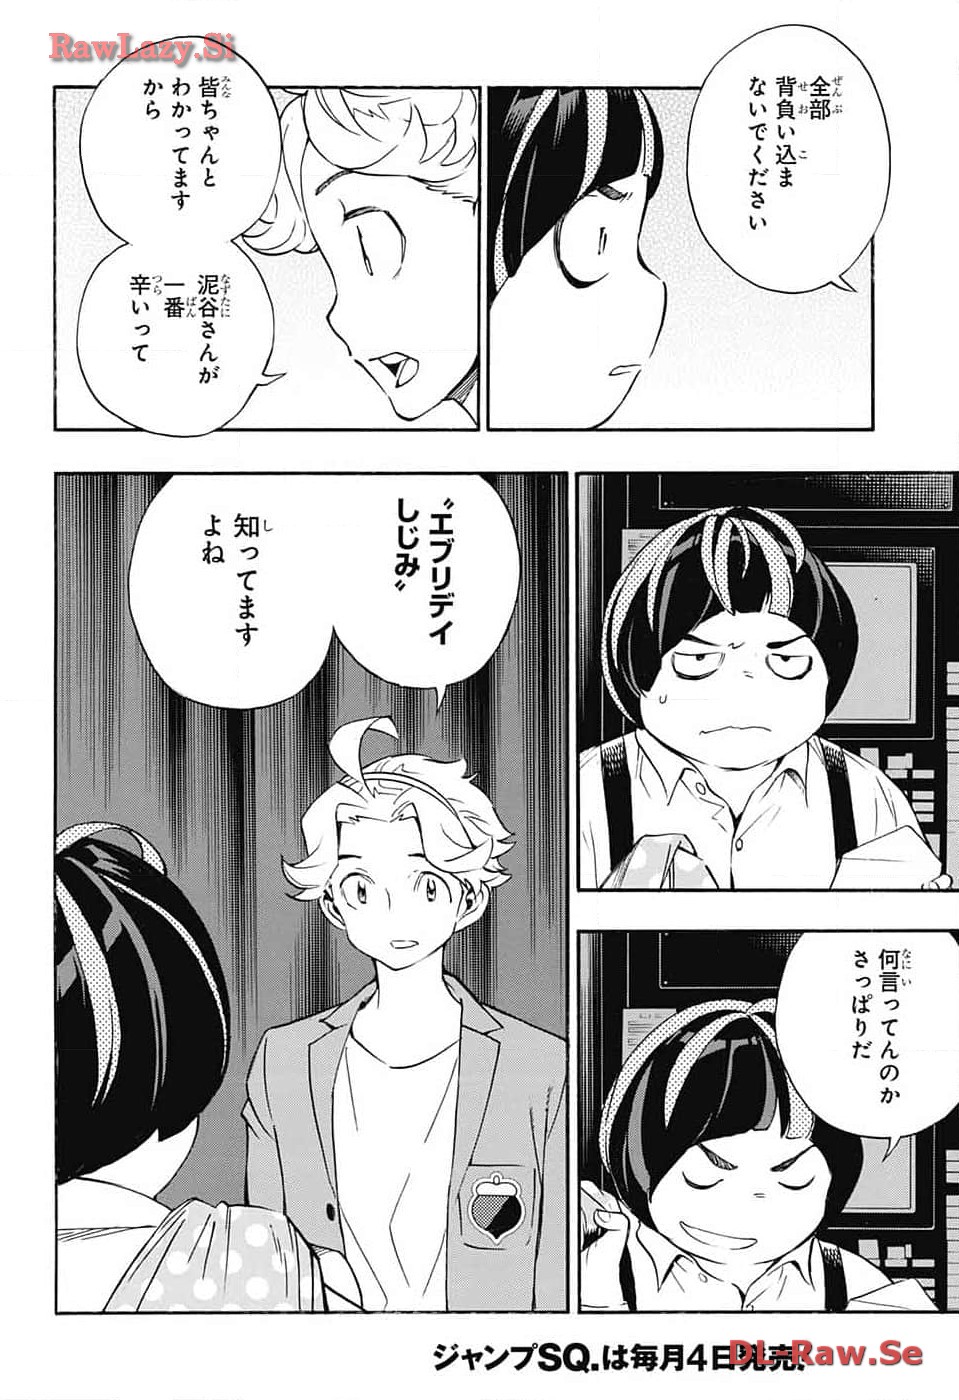 Show-ha Shou-ten! - Chapter 27 - Page 2